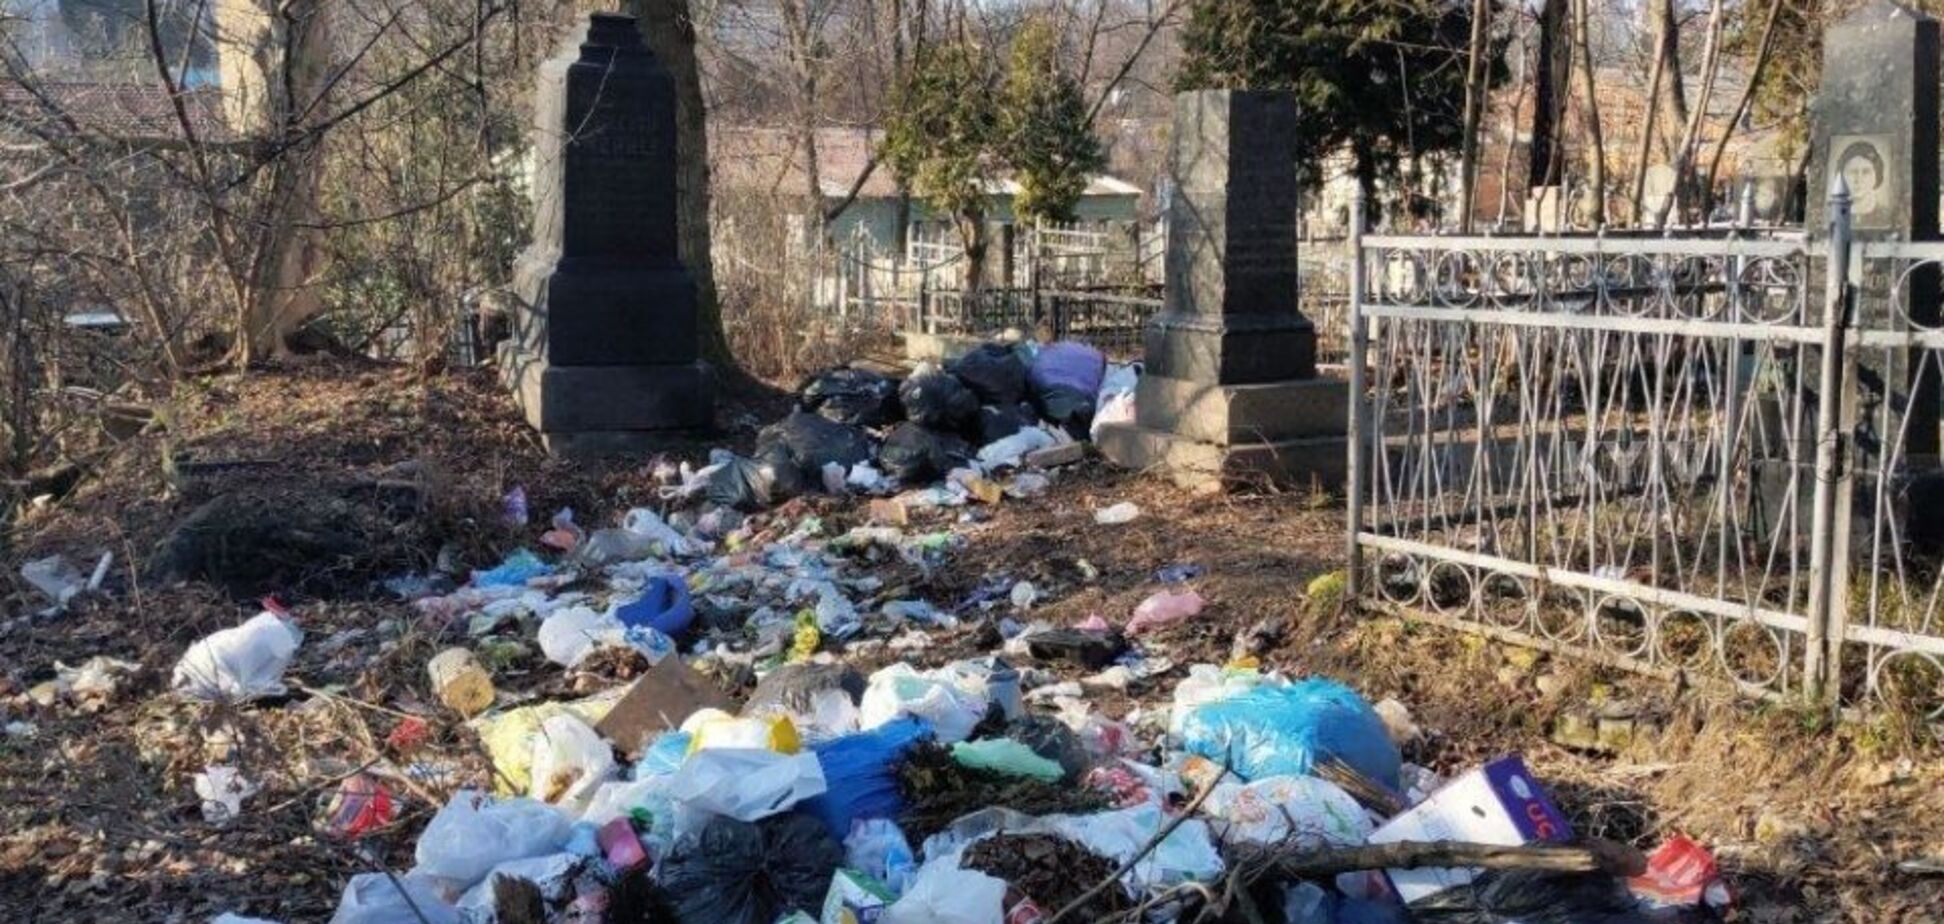 Горы мусора и 'туалеты' в склепах: Байковое кладбище в Киеве превратили в помойку. Фото